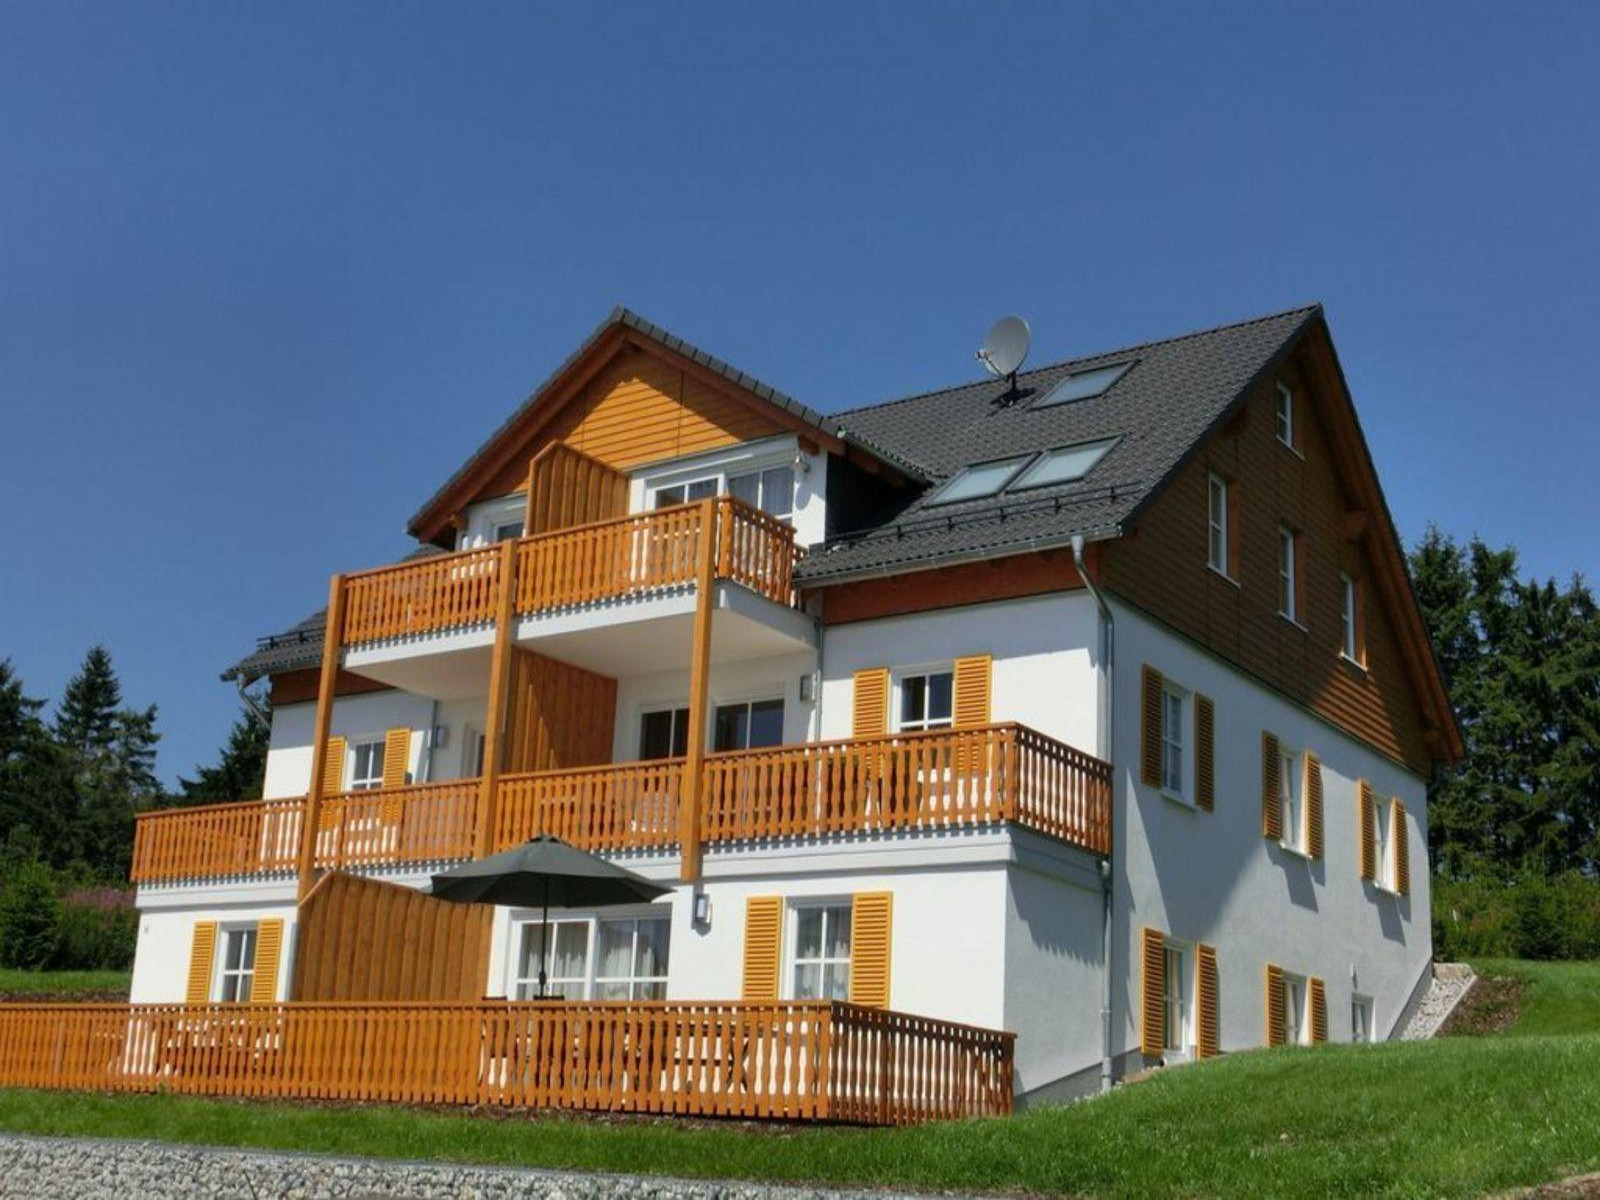 Luxe 6 persoons appartement in de omgeving van Winterberg - Duitsland - Europa - Neuastenberg